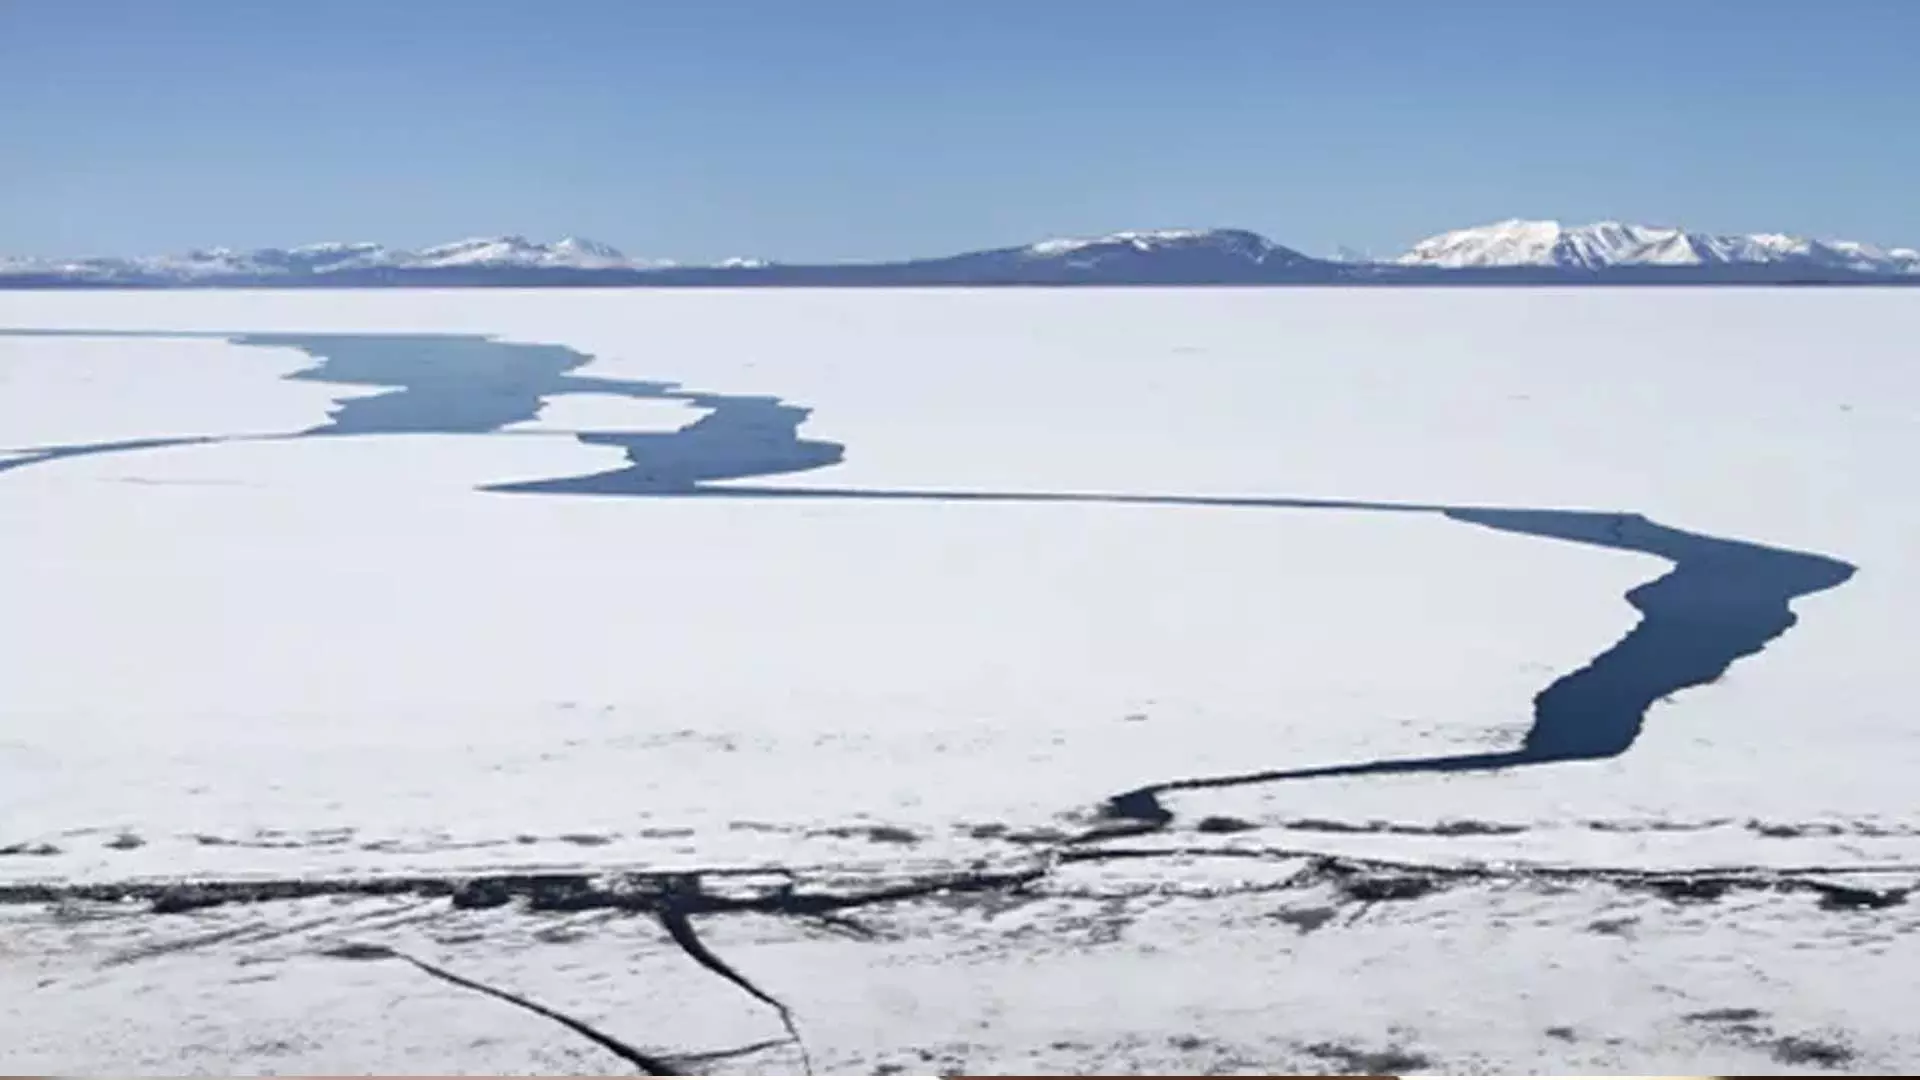 येलोस्टोन झील का जलवायु परिवर्तन के प्रति अजीब प्रतिरोध होने वाला है ख़त्म